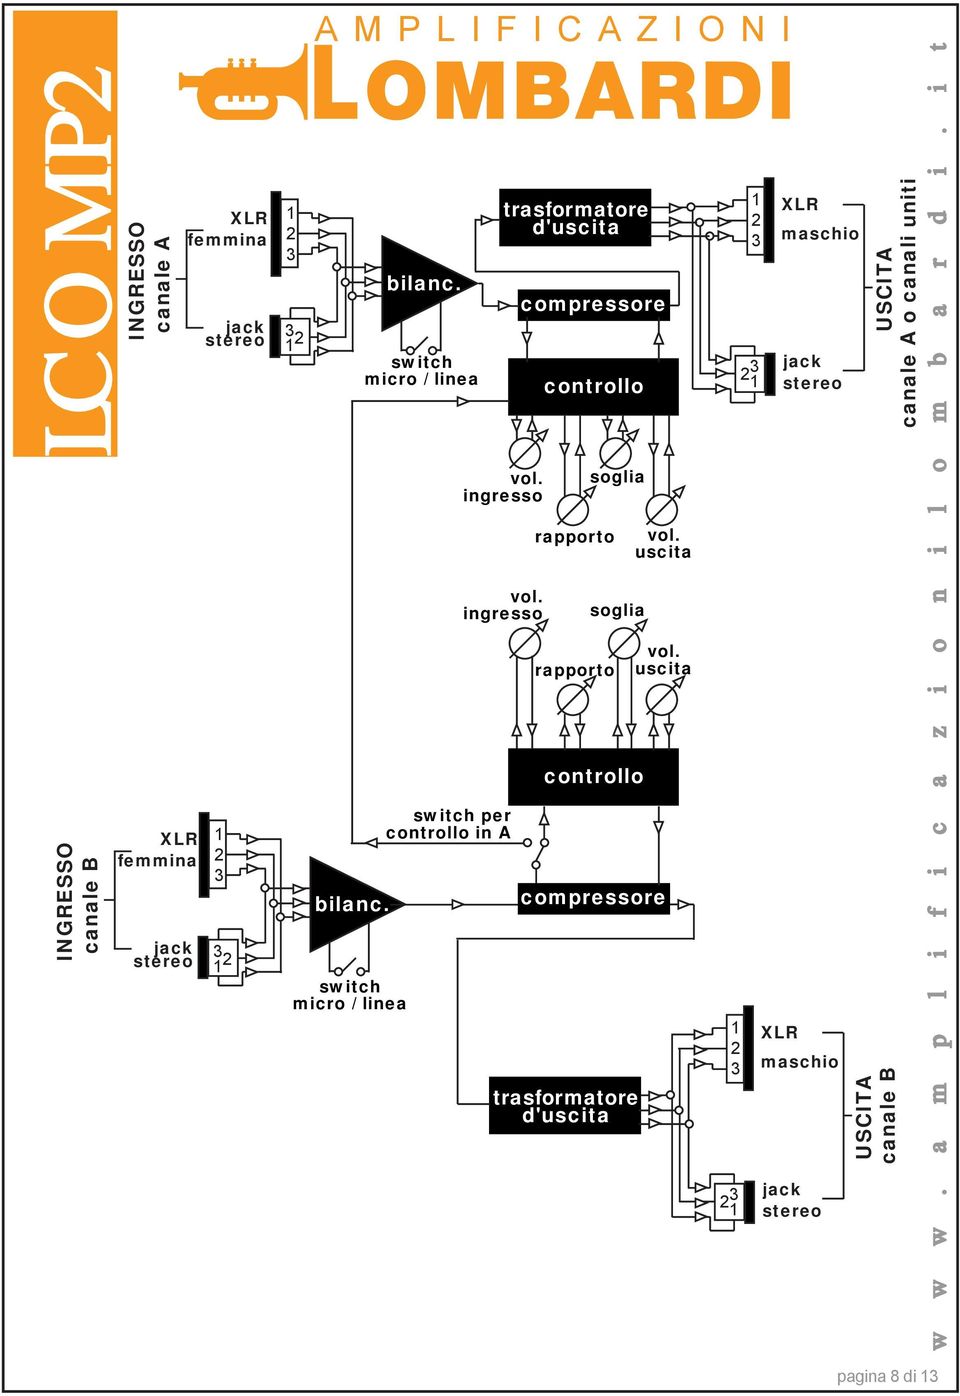 ingresso switch per controllo in A trasformatore d'uscita compressore controllo rapporto rapporto soglia soglia